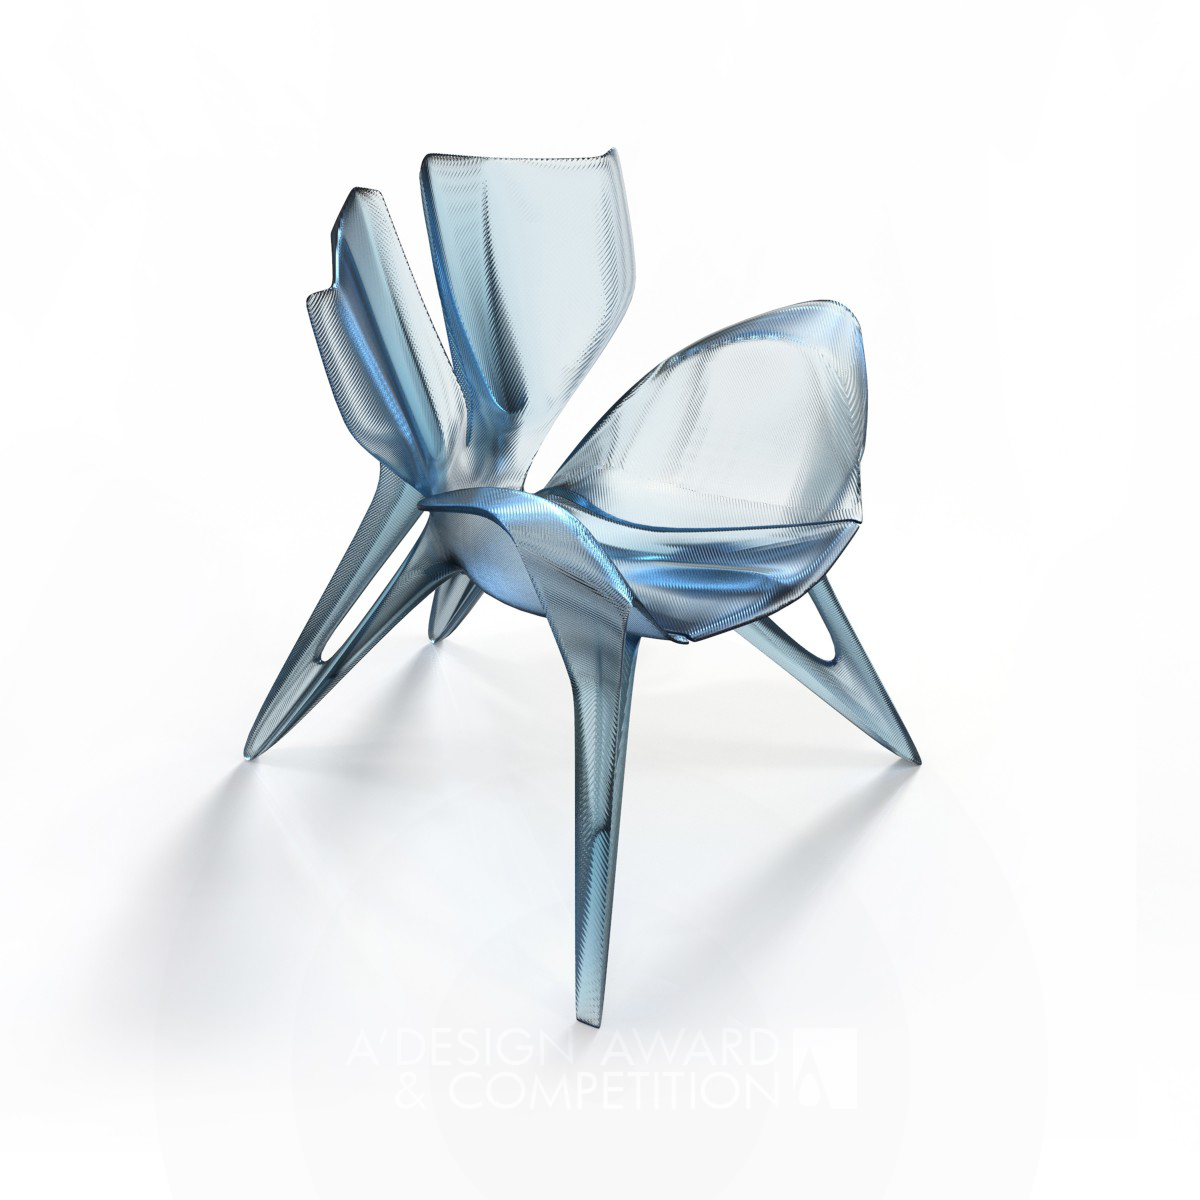 나비의 날개에서 영감을 받은 레저 의자 디자인